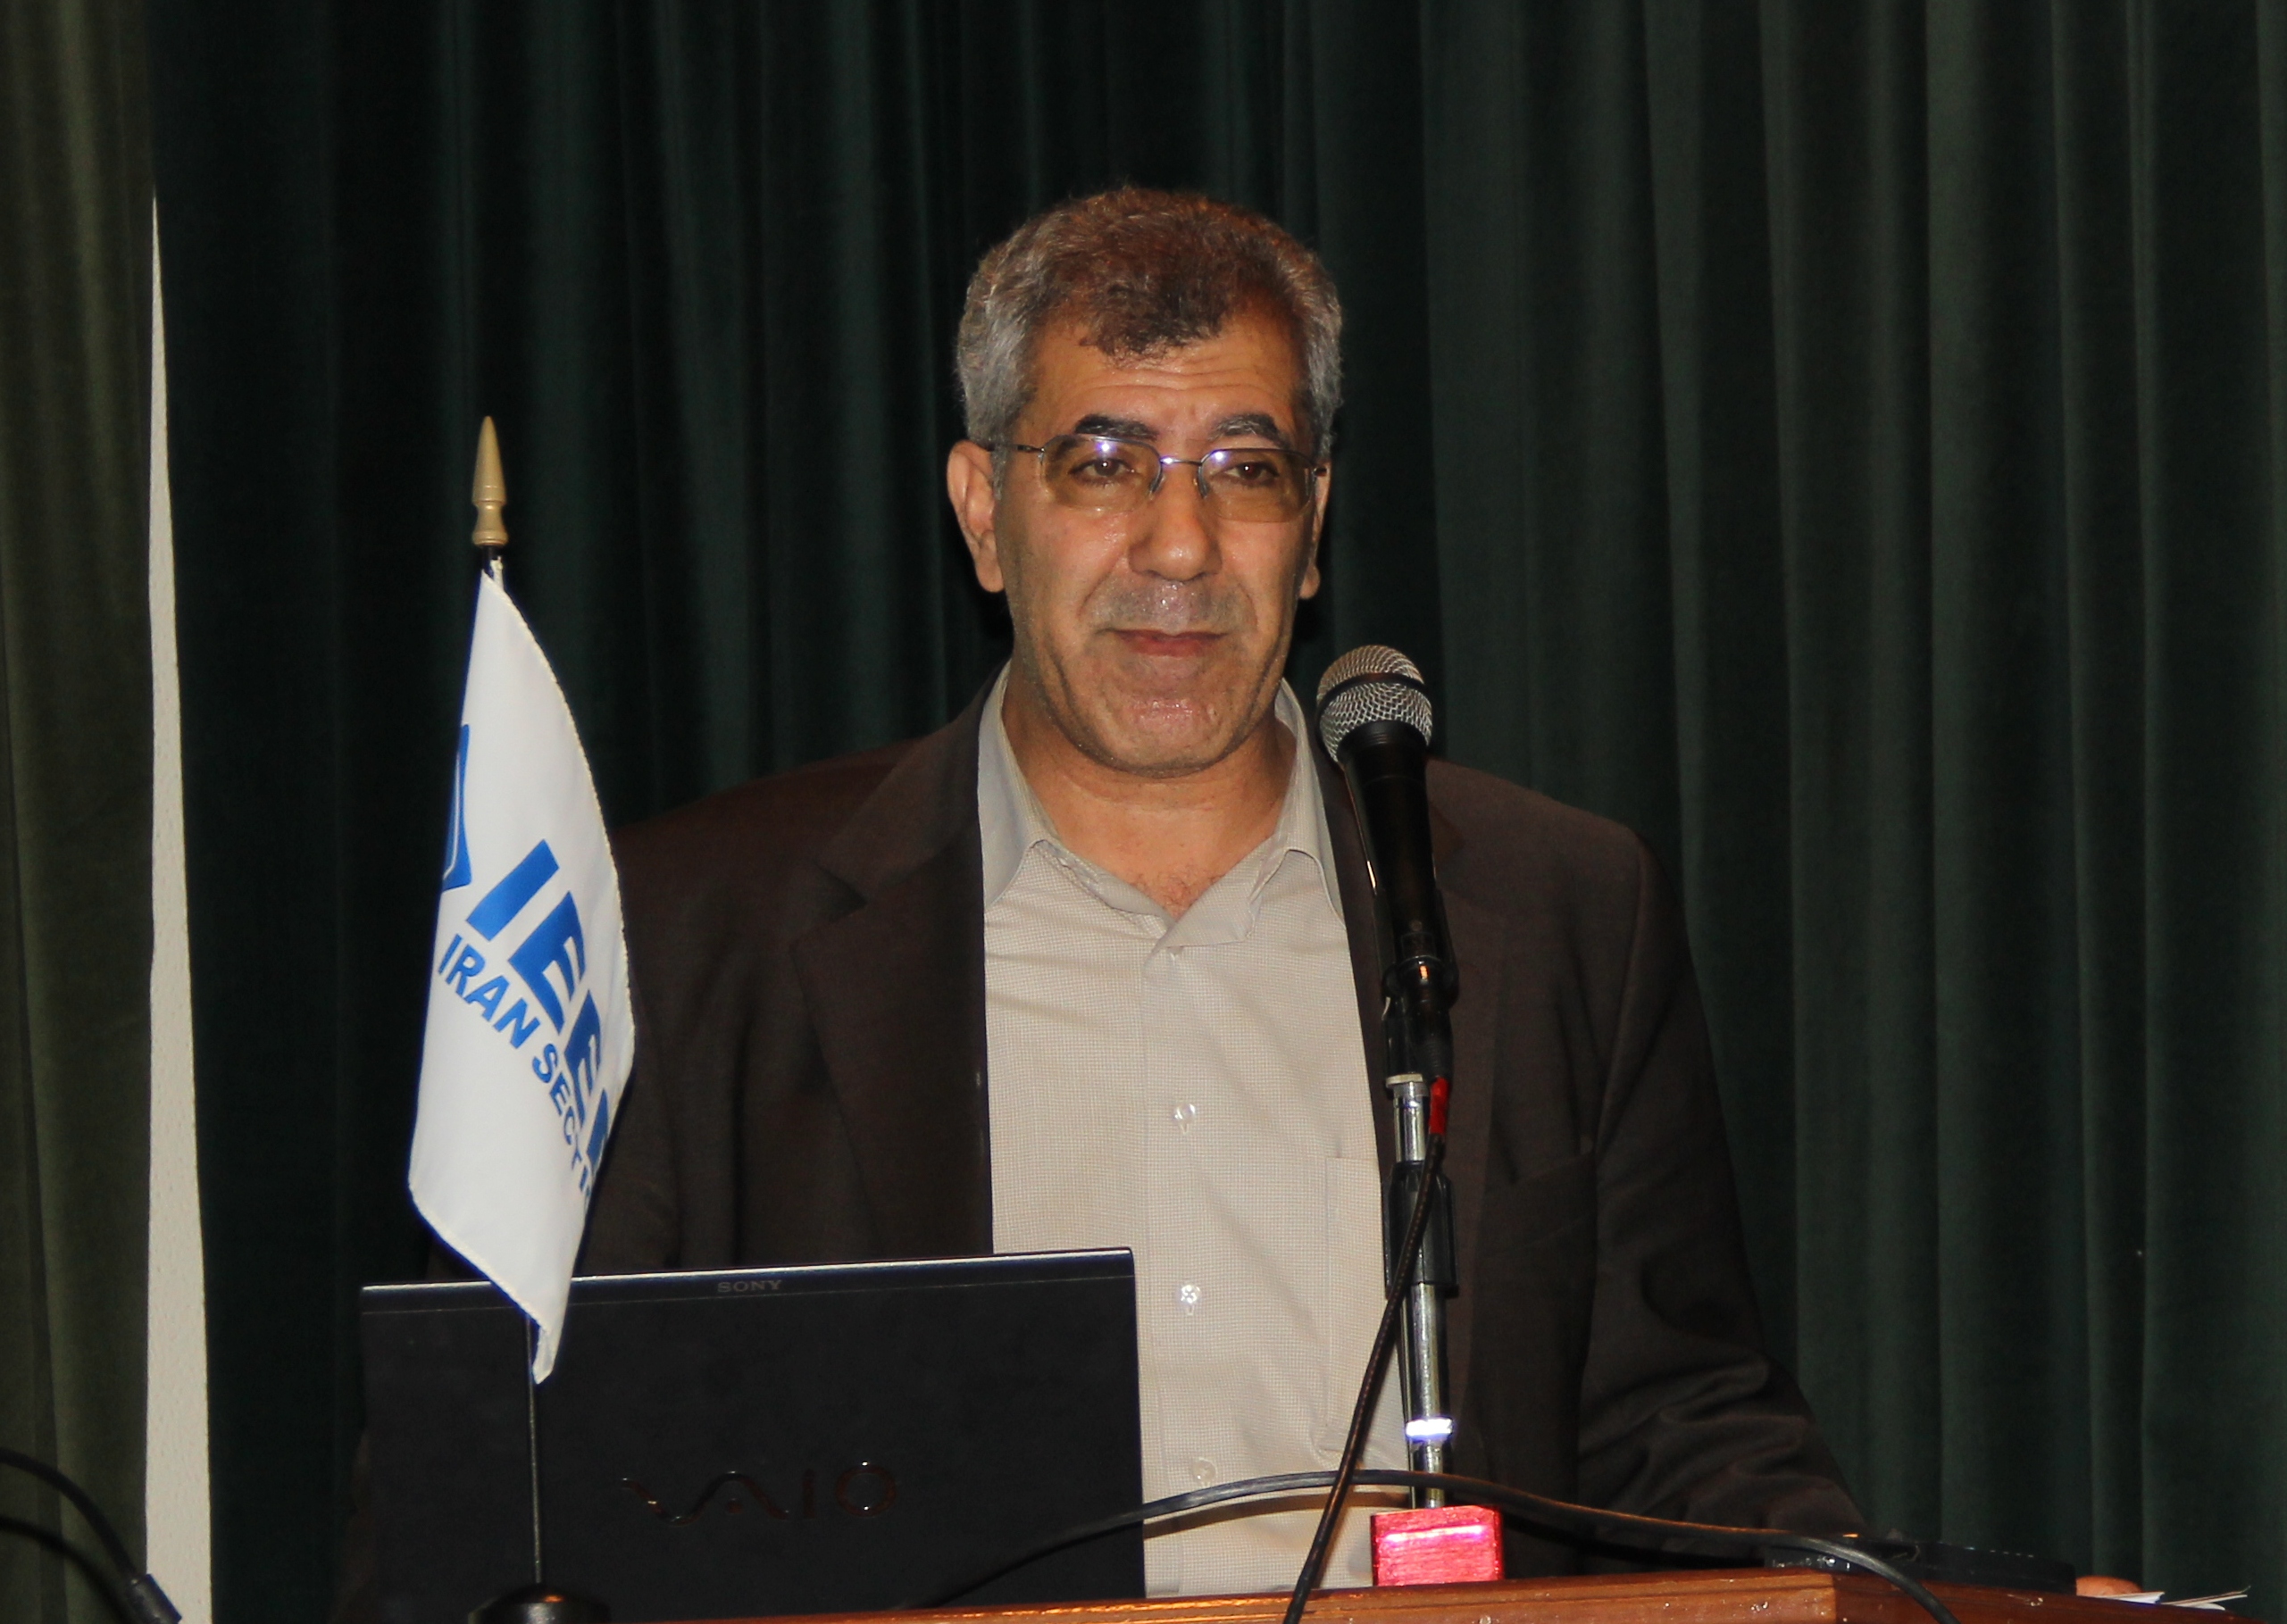 دکتر محمود فتوحی فیروزآّبادصدوق بعنوان برترین مقام علمی کشور ایران